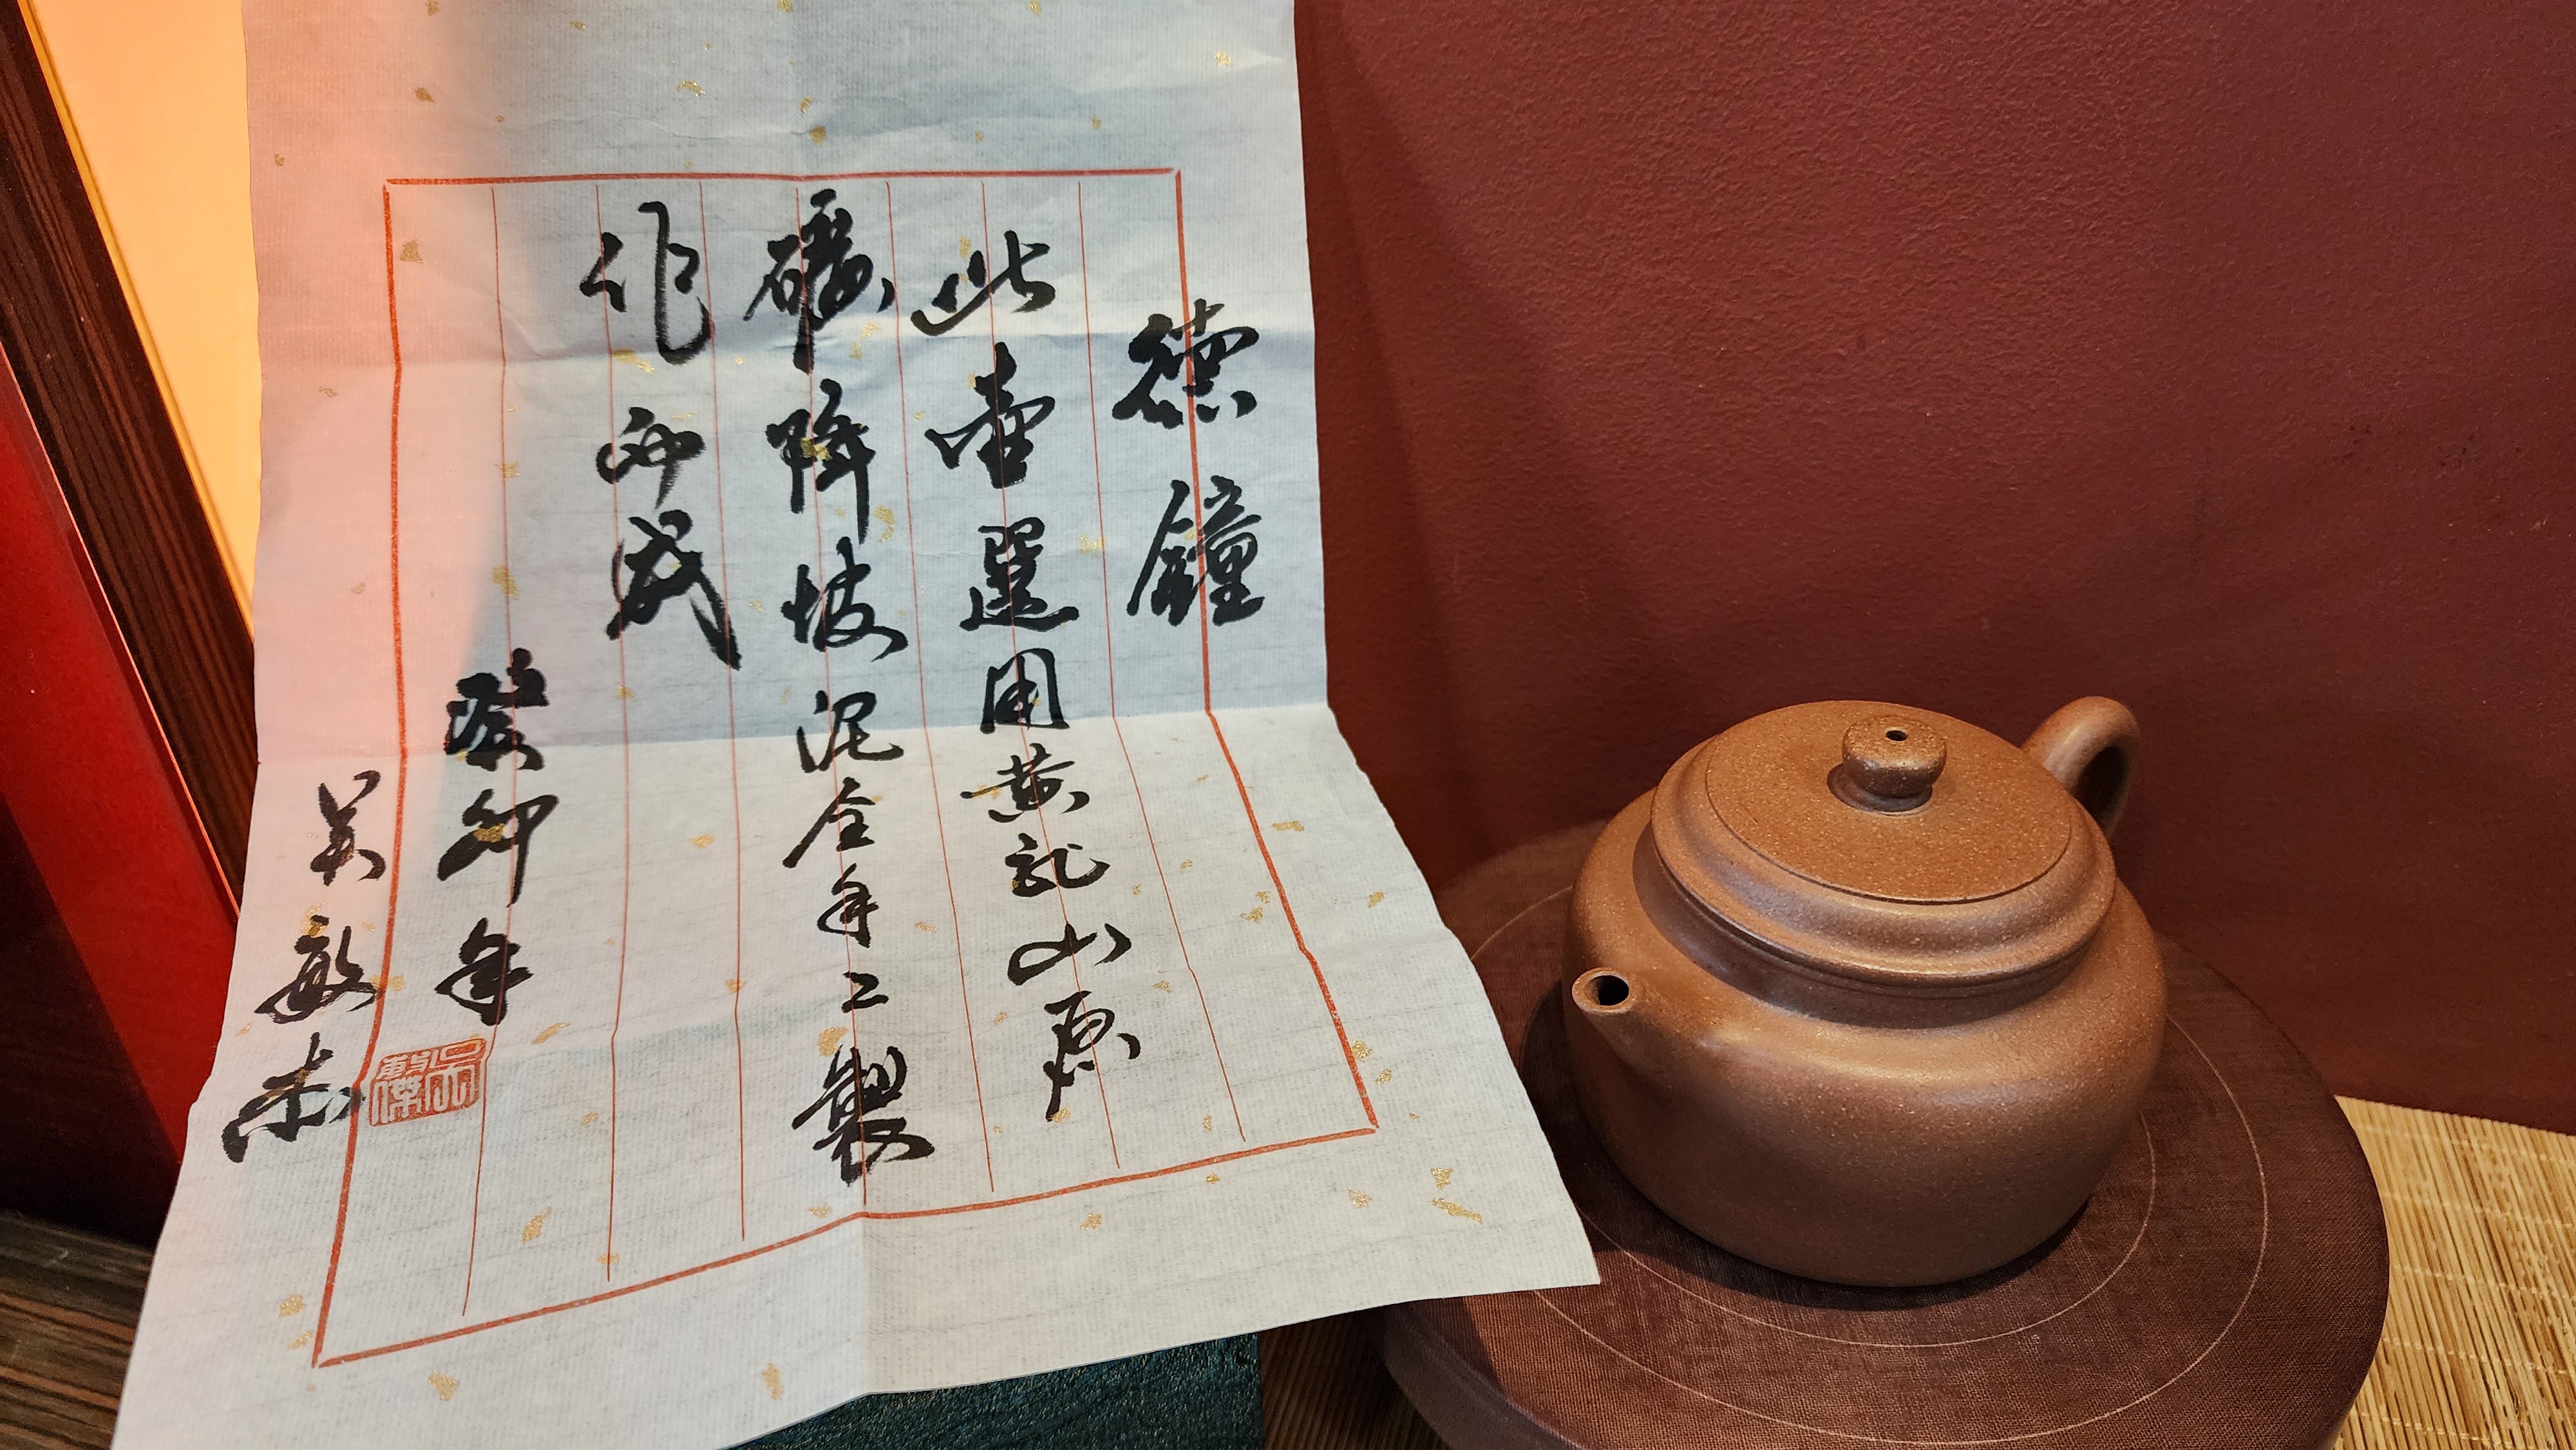 De Zhong 德钟, 291ml, Hong JiangPoNi 红降坡泥,  by our Craftsman Wu Min Jie 吴敏杰。